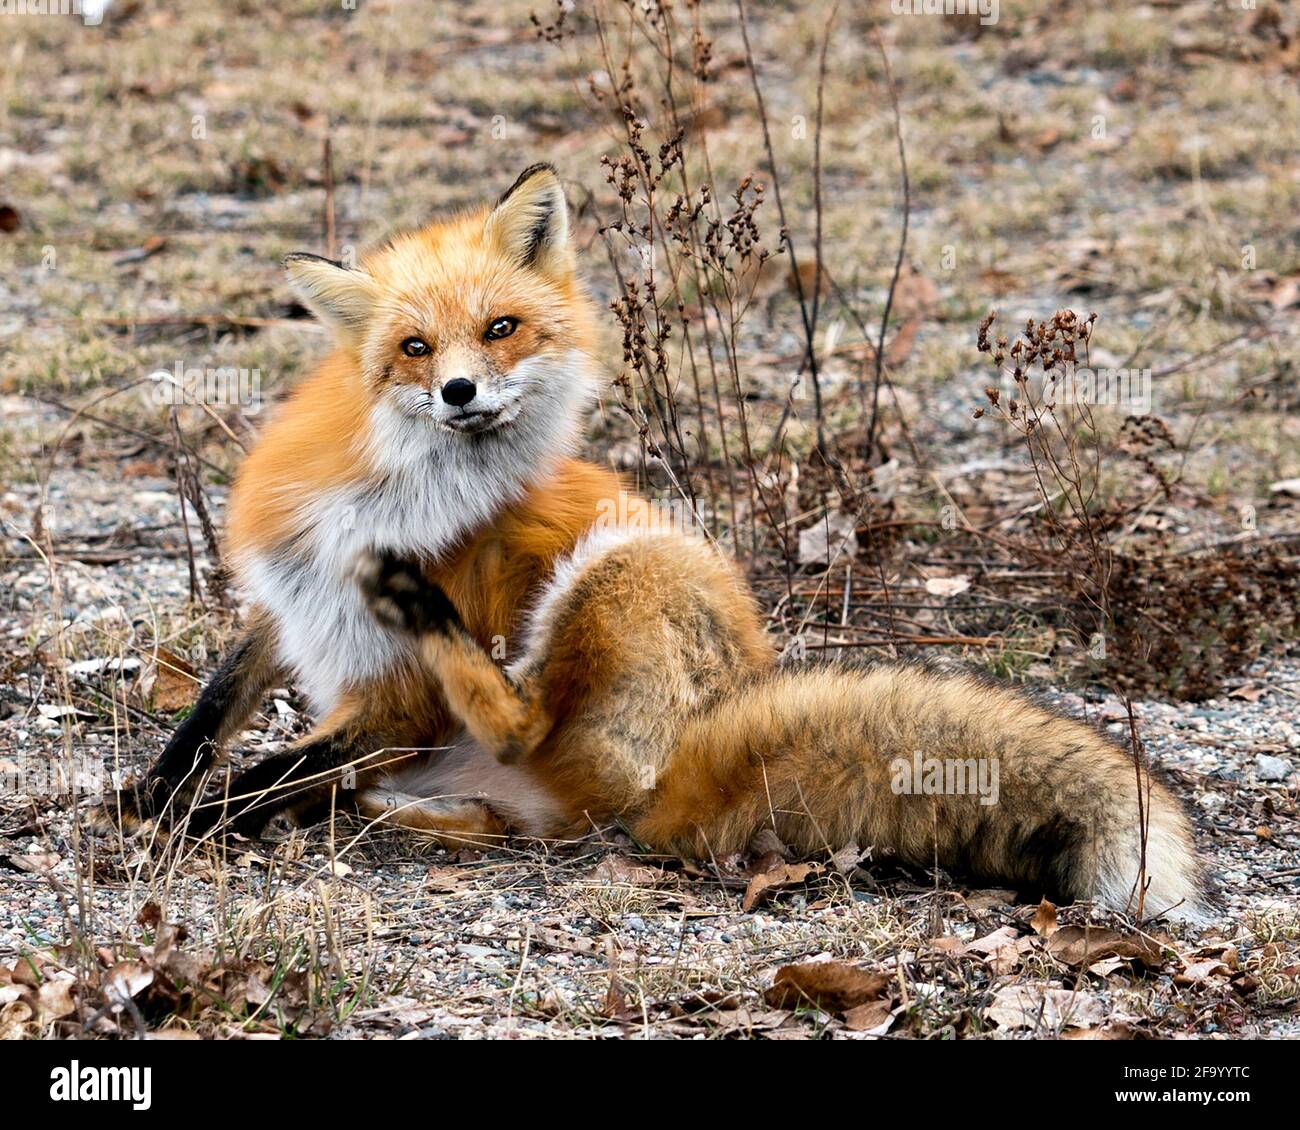 Rotfuchs Nahaufnahme der Kamera mit verwacklungsunscharfem Frühlingsbelaub im Hintergrund in ihrer Umgebung und ihrem Lebensraum mit buschigen Schwanz und Fell. Fox-Bild. Bild. Stockfoto